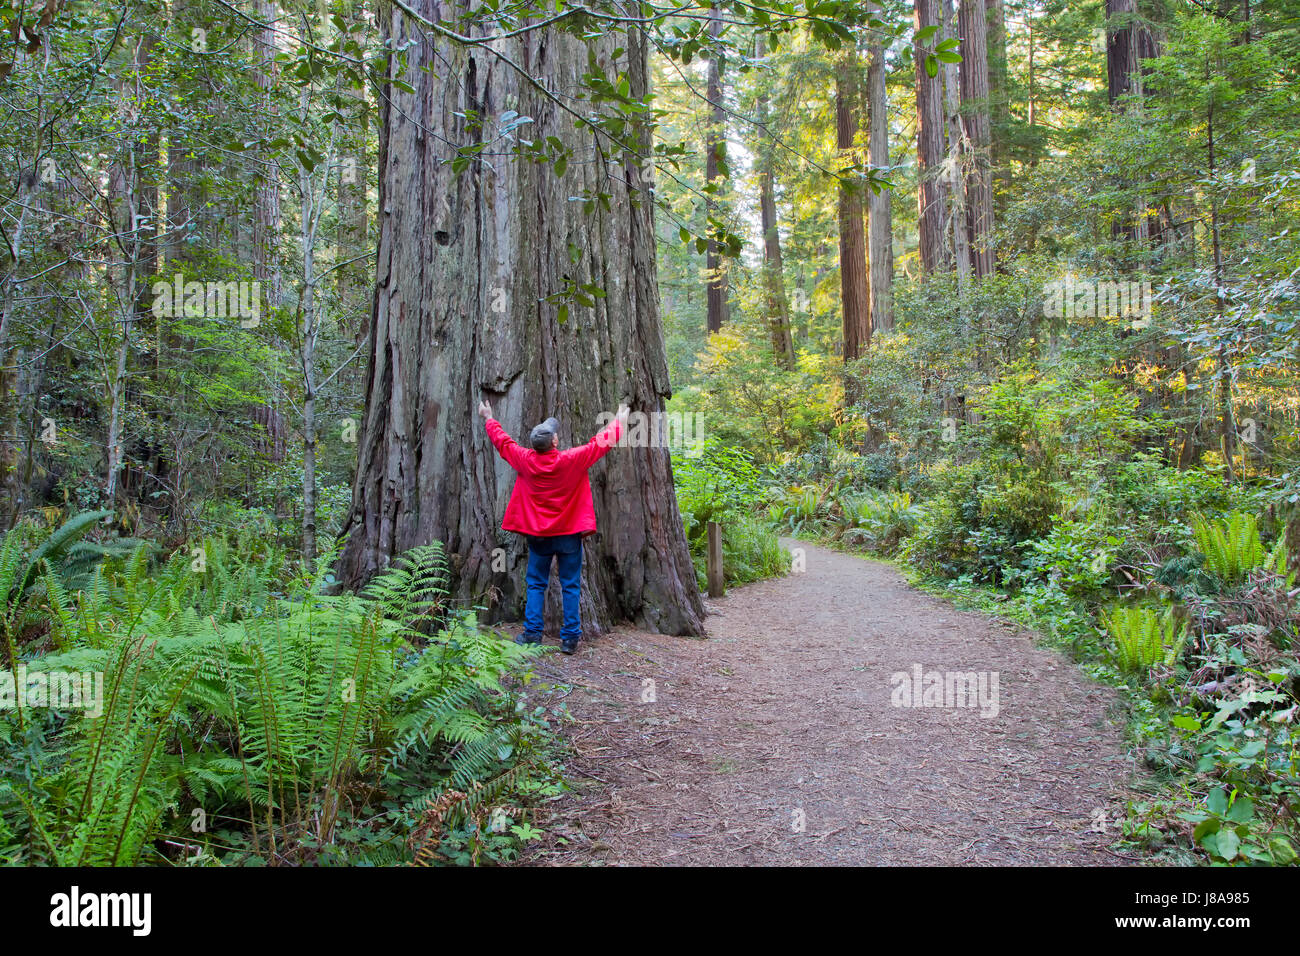 Homme adulte, bras relevés, communiquant avec l'ancien arbre de séquoia 'Sequoia sempervirens', Western Sword Ferns, sentier forestier, lumière tôt le matin. Banque D'Images